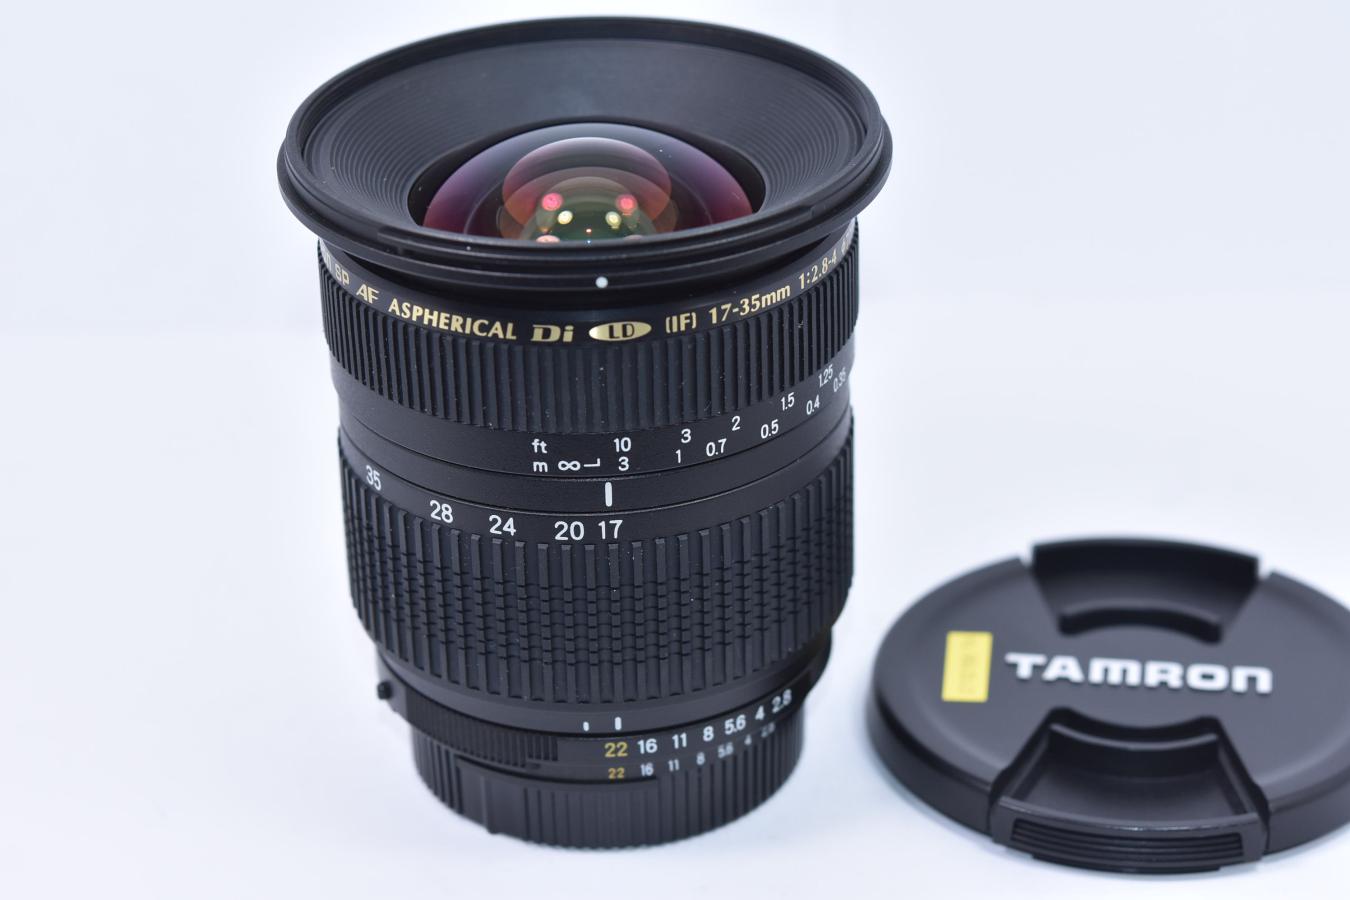 TAMRON SP AF 17-35mm F/2.8-4 Di LD Nikon